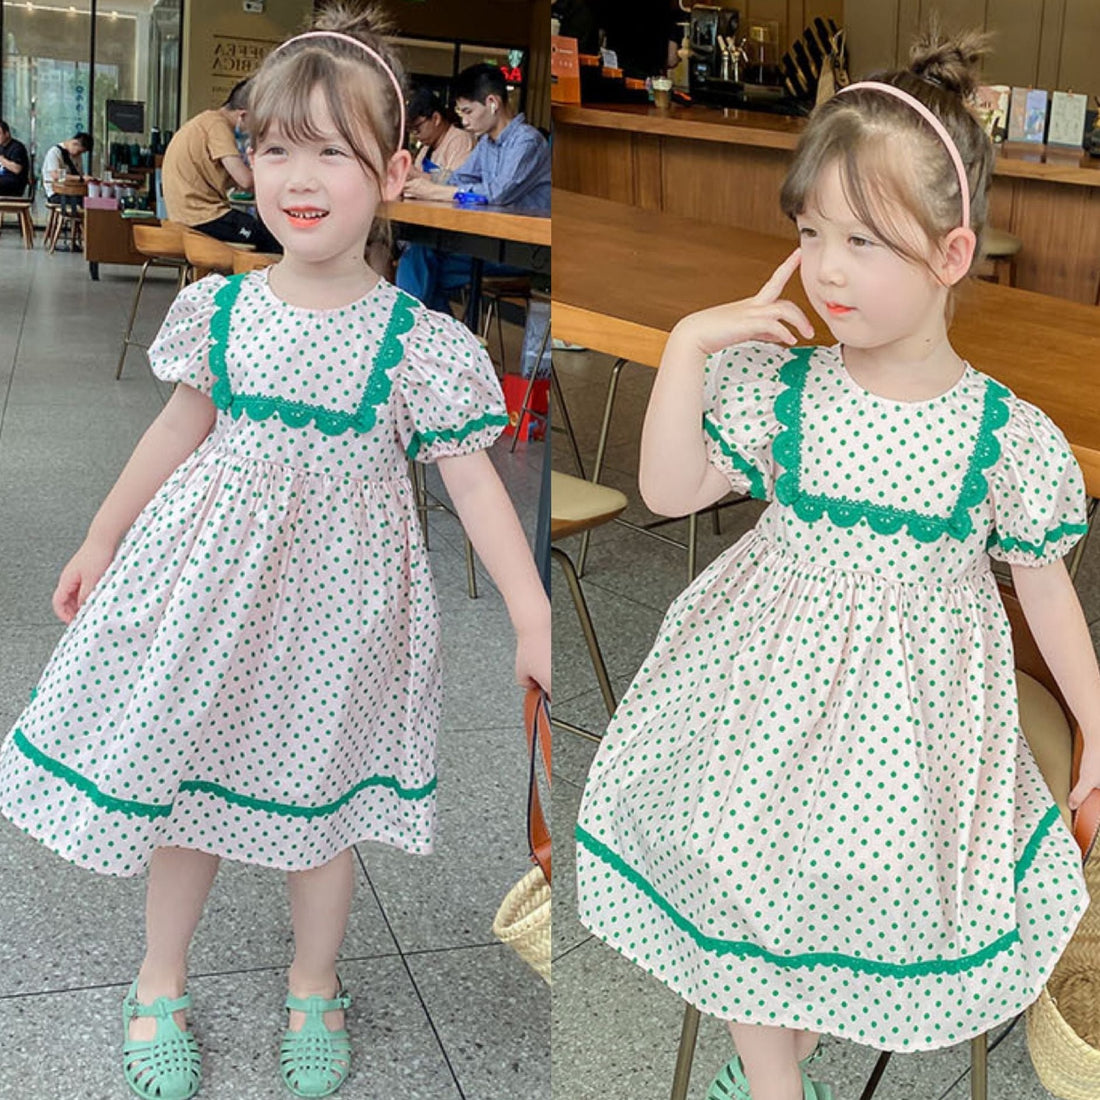 [507621] - Dress Anak Perempuan Fashion - Motif Polka Lace